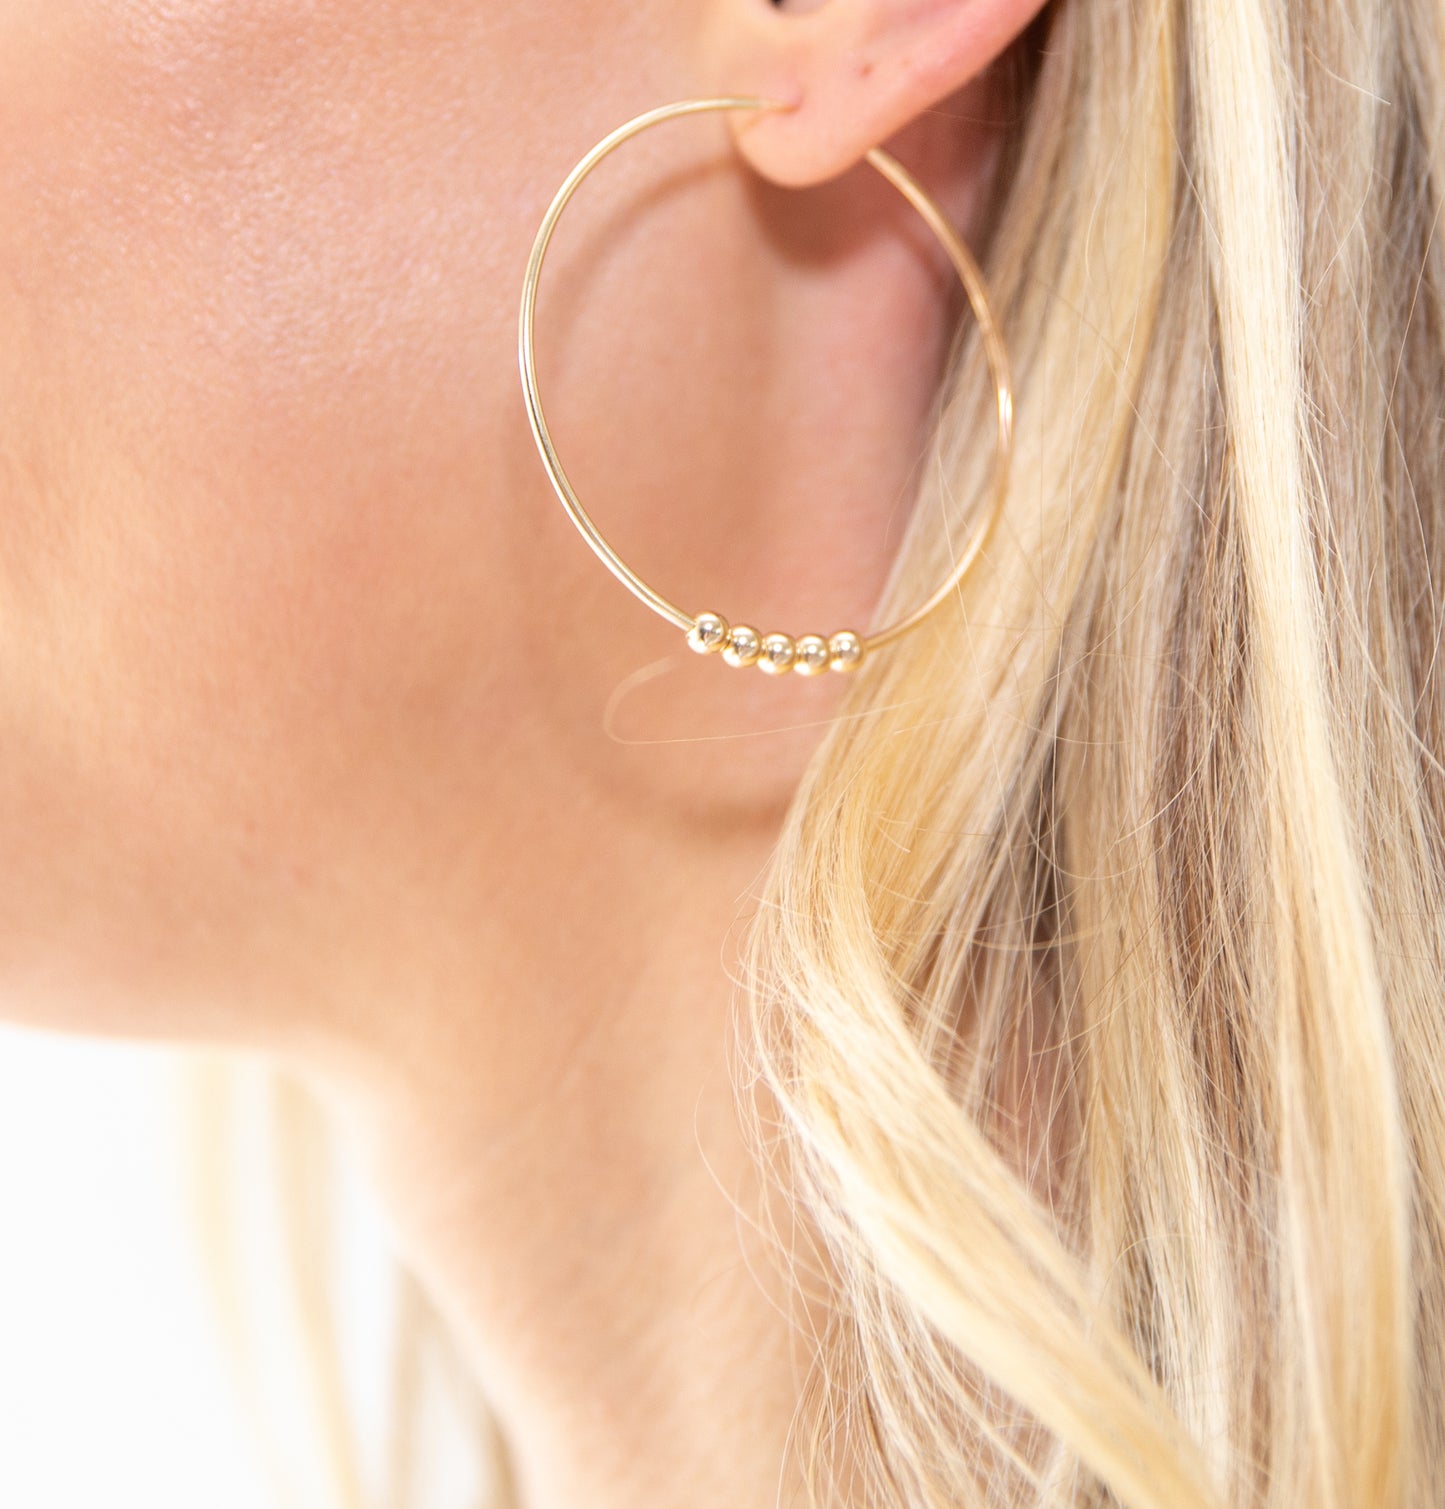 Large Gold Hoop Earrings + Details